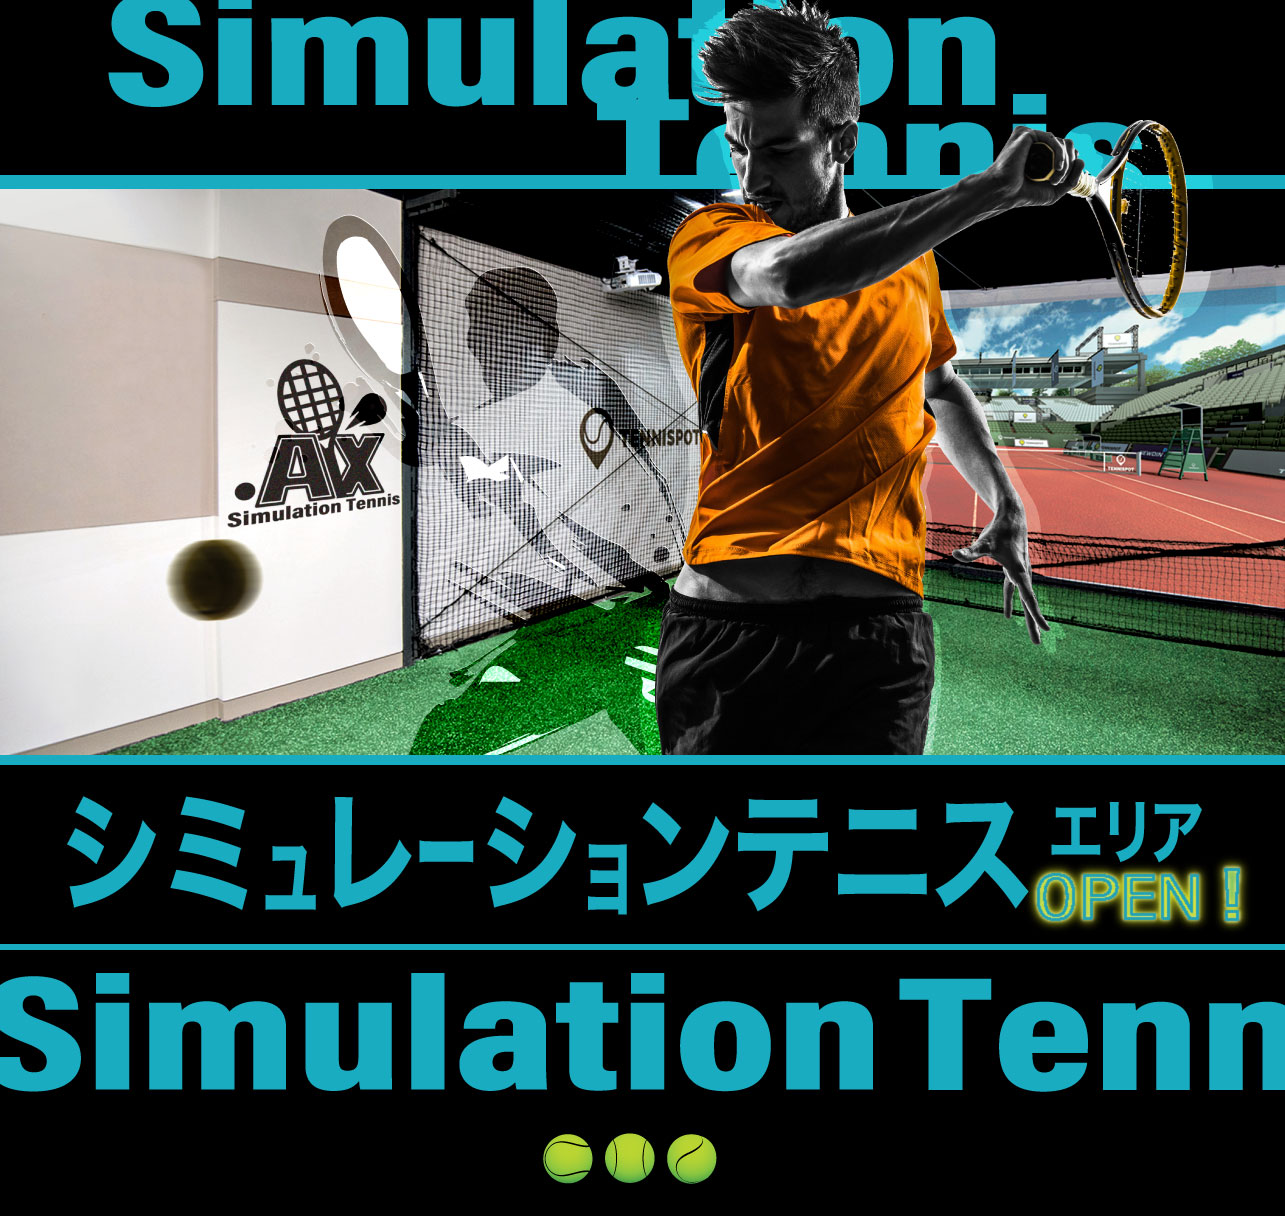 シミュレーションテニスメインイメージ